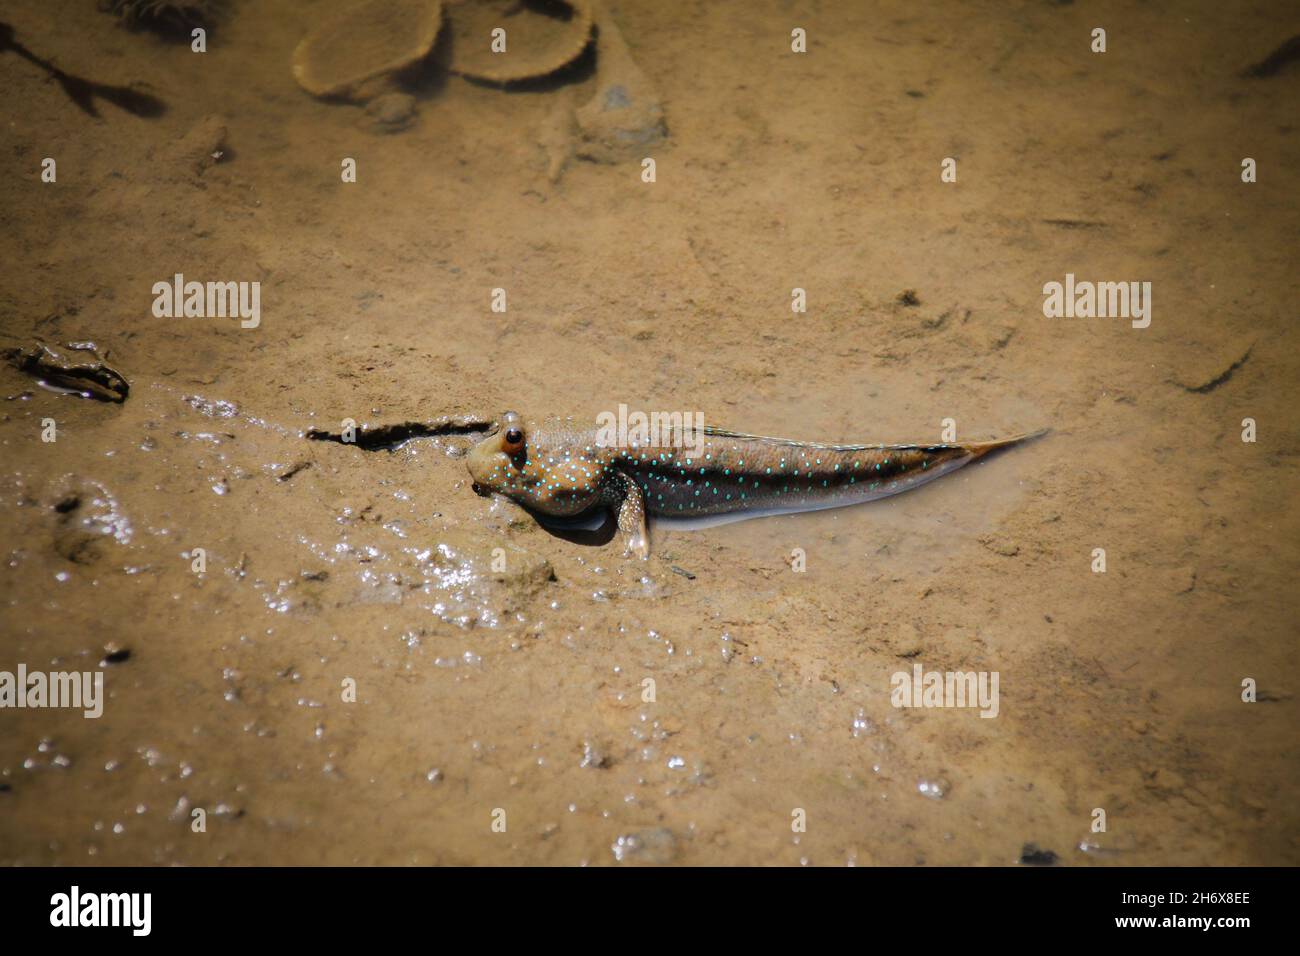 Ein Schlammkipper oder Periophthalmus barbarus, ein amphibischer Fisch, der mit dem schlammigen Sumpf getarnt ist Stockfoto